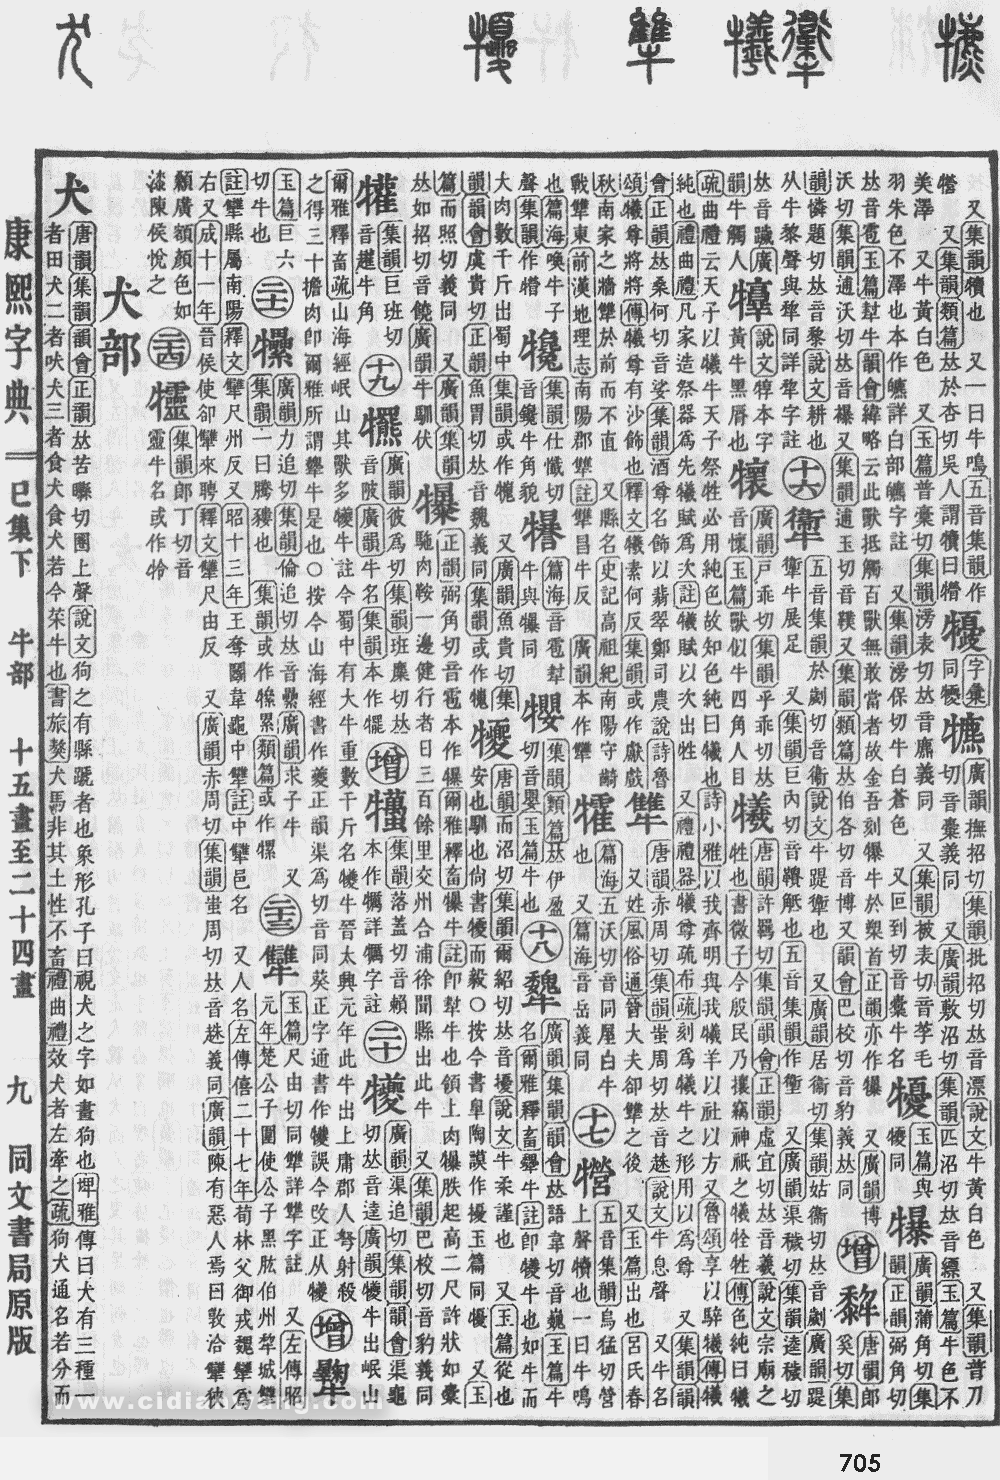 康熙字典掃描版第705頁